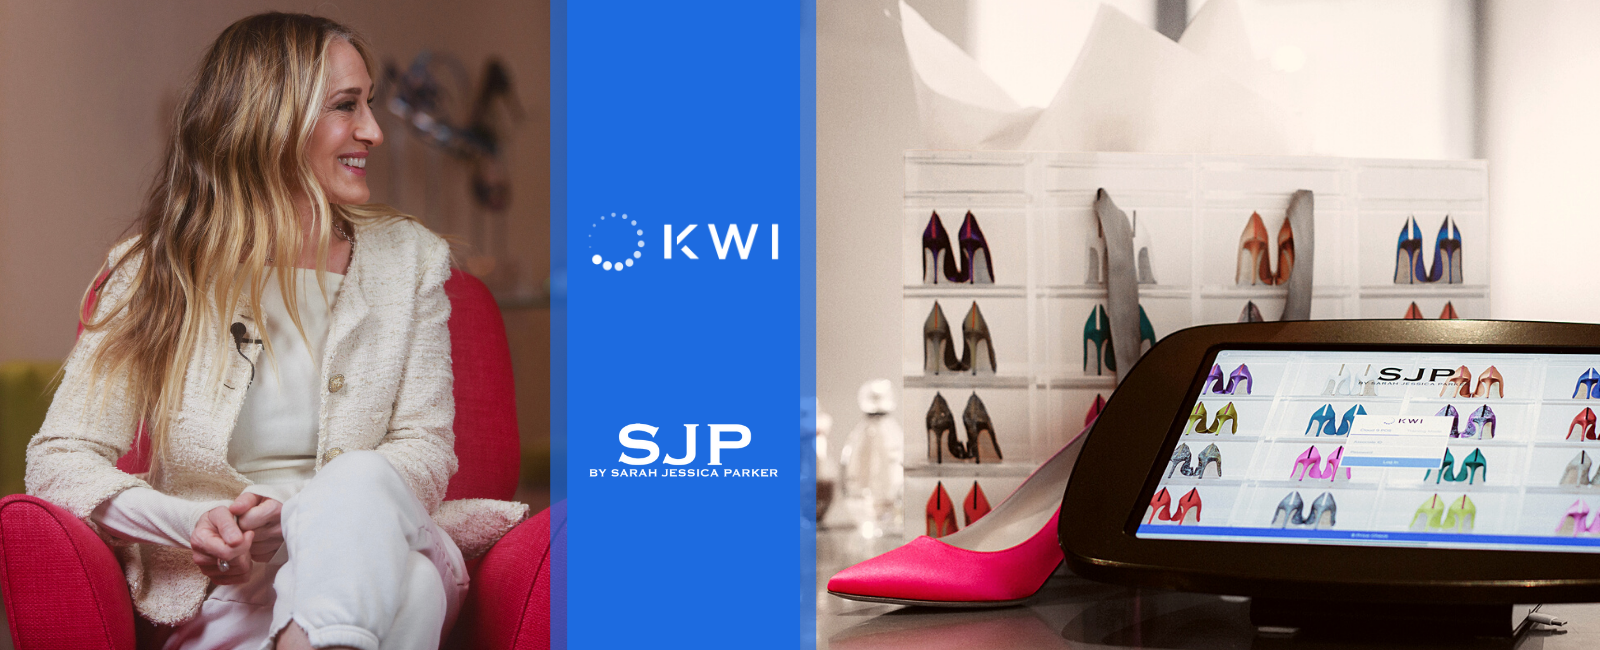 KWI customer - SJP - POS